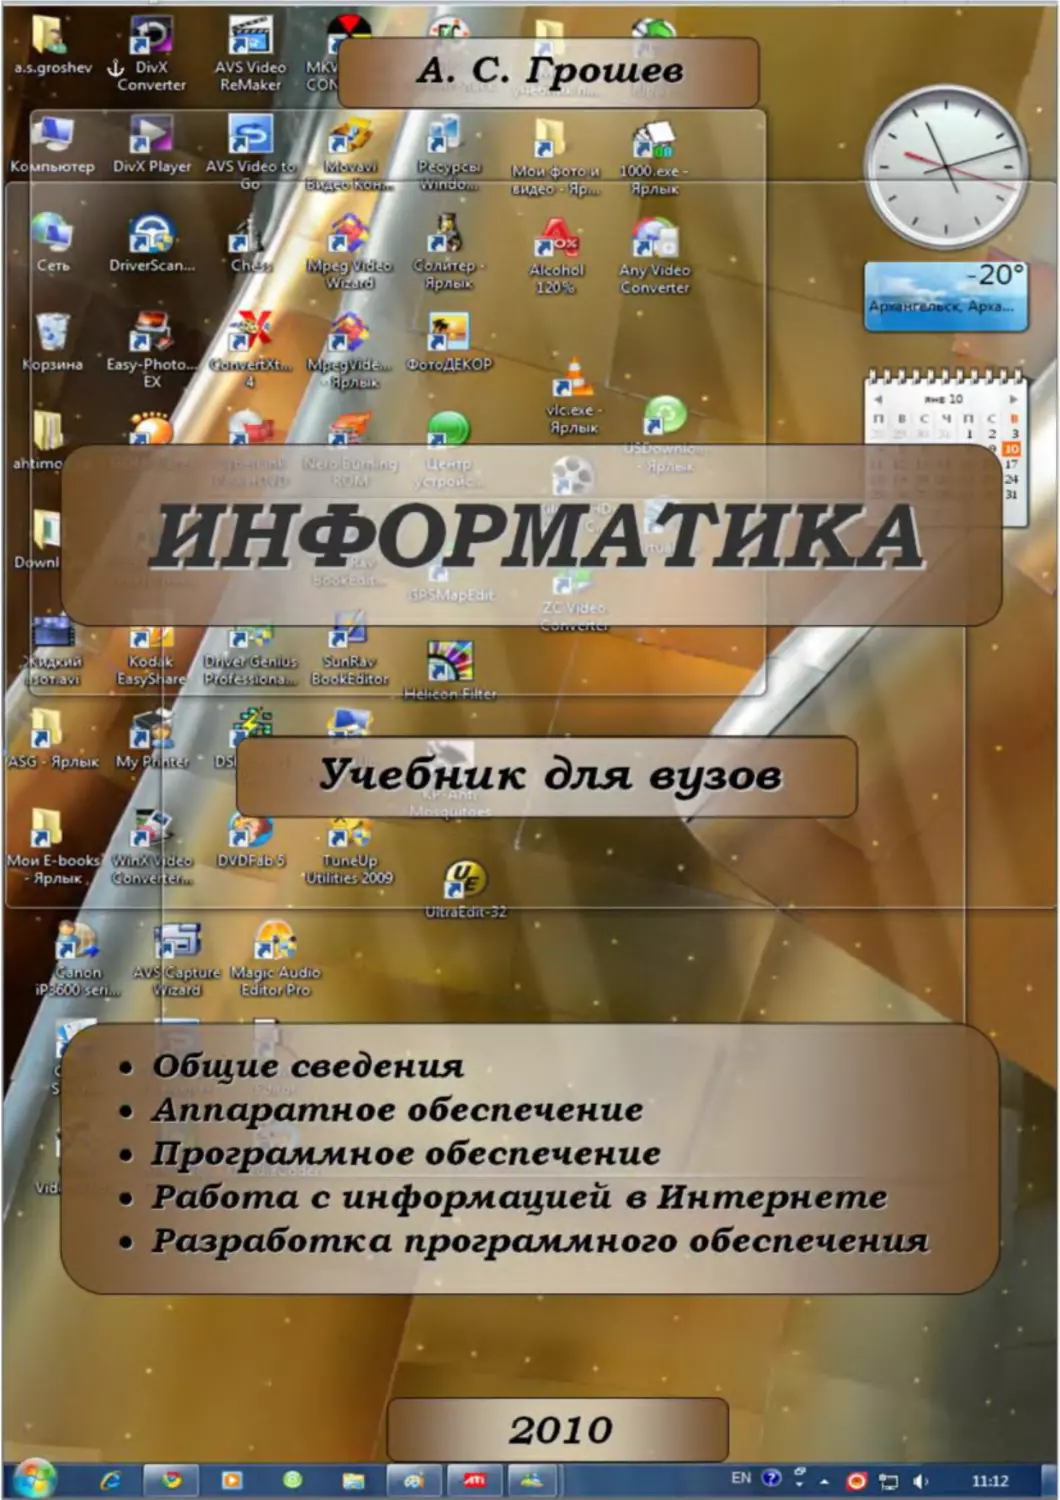 Binder1
Informatika_Uchebnik_dlya_vuzov_2010 1